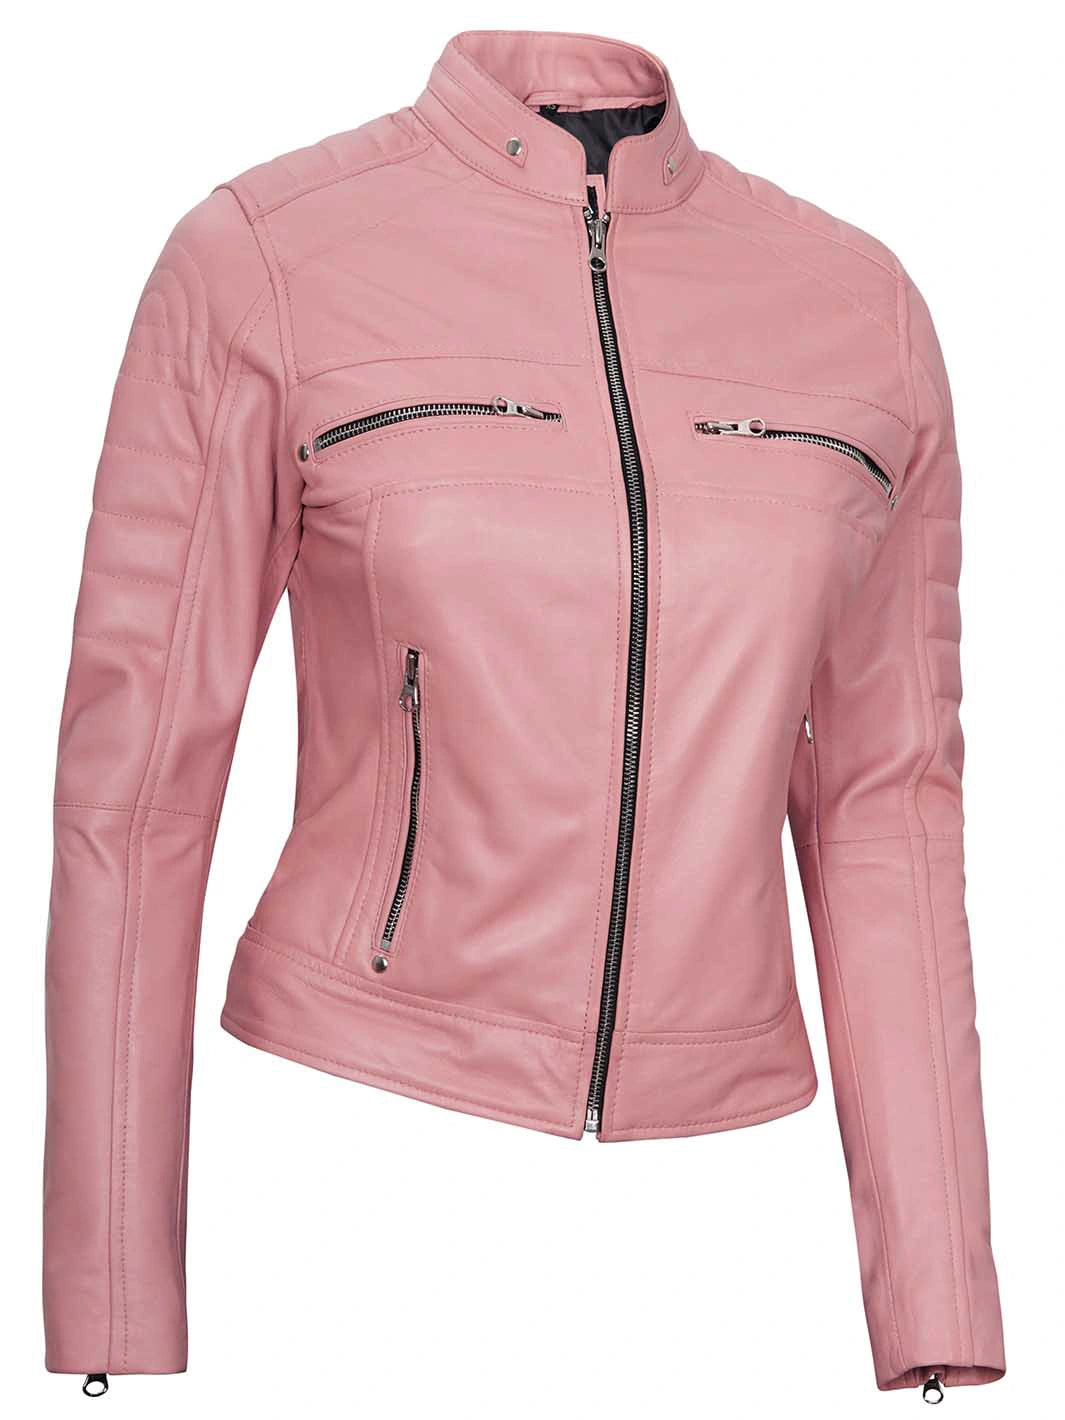 Pink cafe racer leather jacket